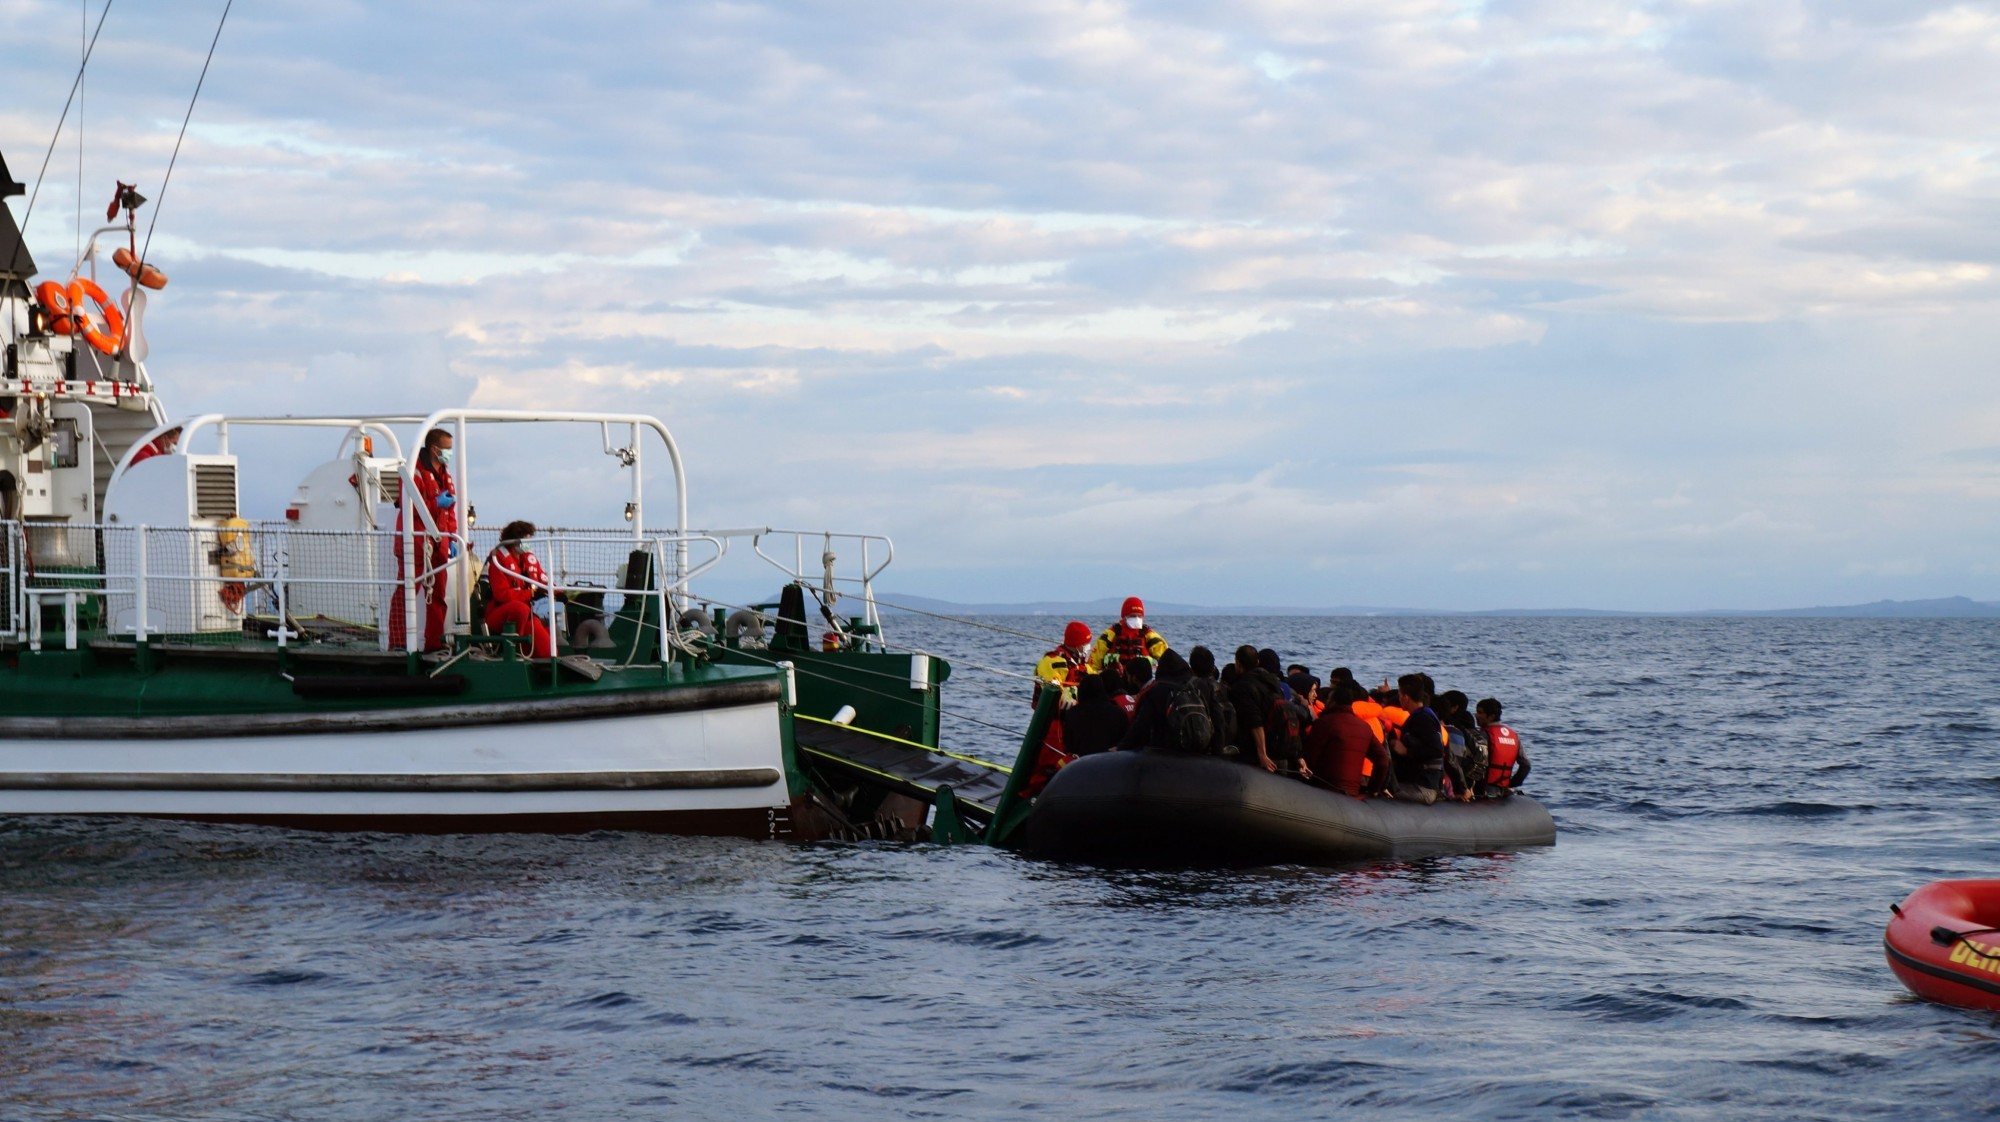 Agência europeia Frontex está acusada de ser cúmplice em operações da marinha grega que impediram a passagem de embarcações rumo à Grécia